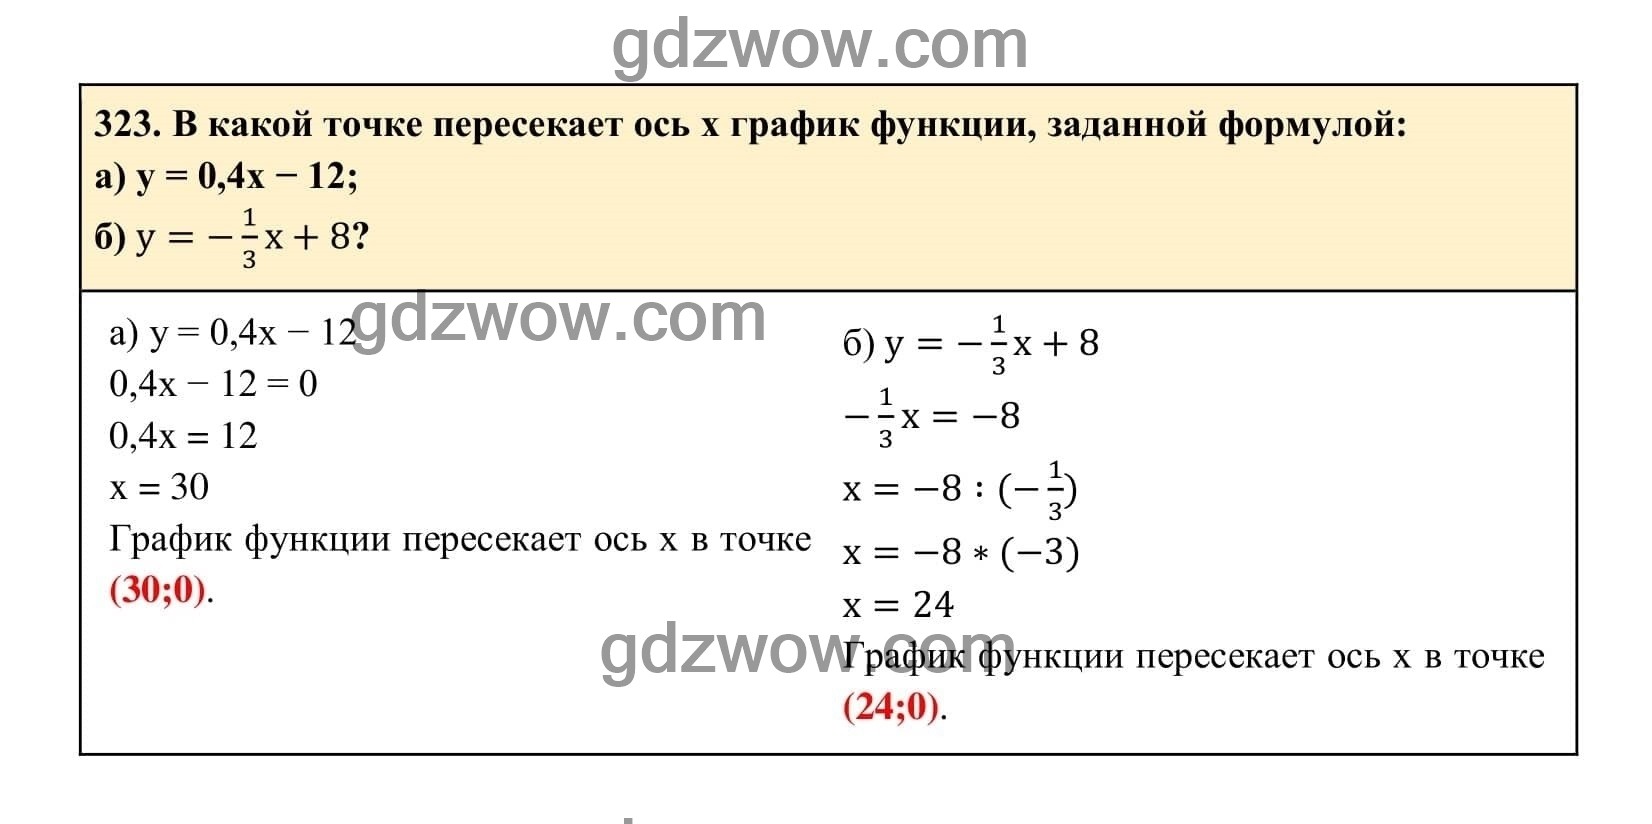 Упражнение 323 - ГДЗ по Алгебре 7 класс Учебник Макарычев (решебник) - GDZwow